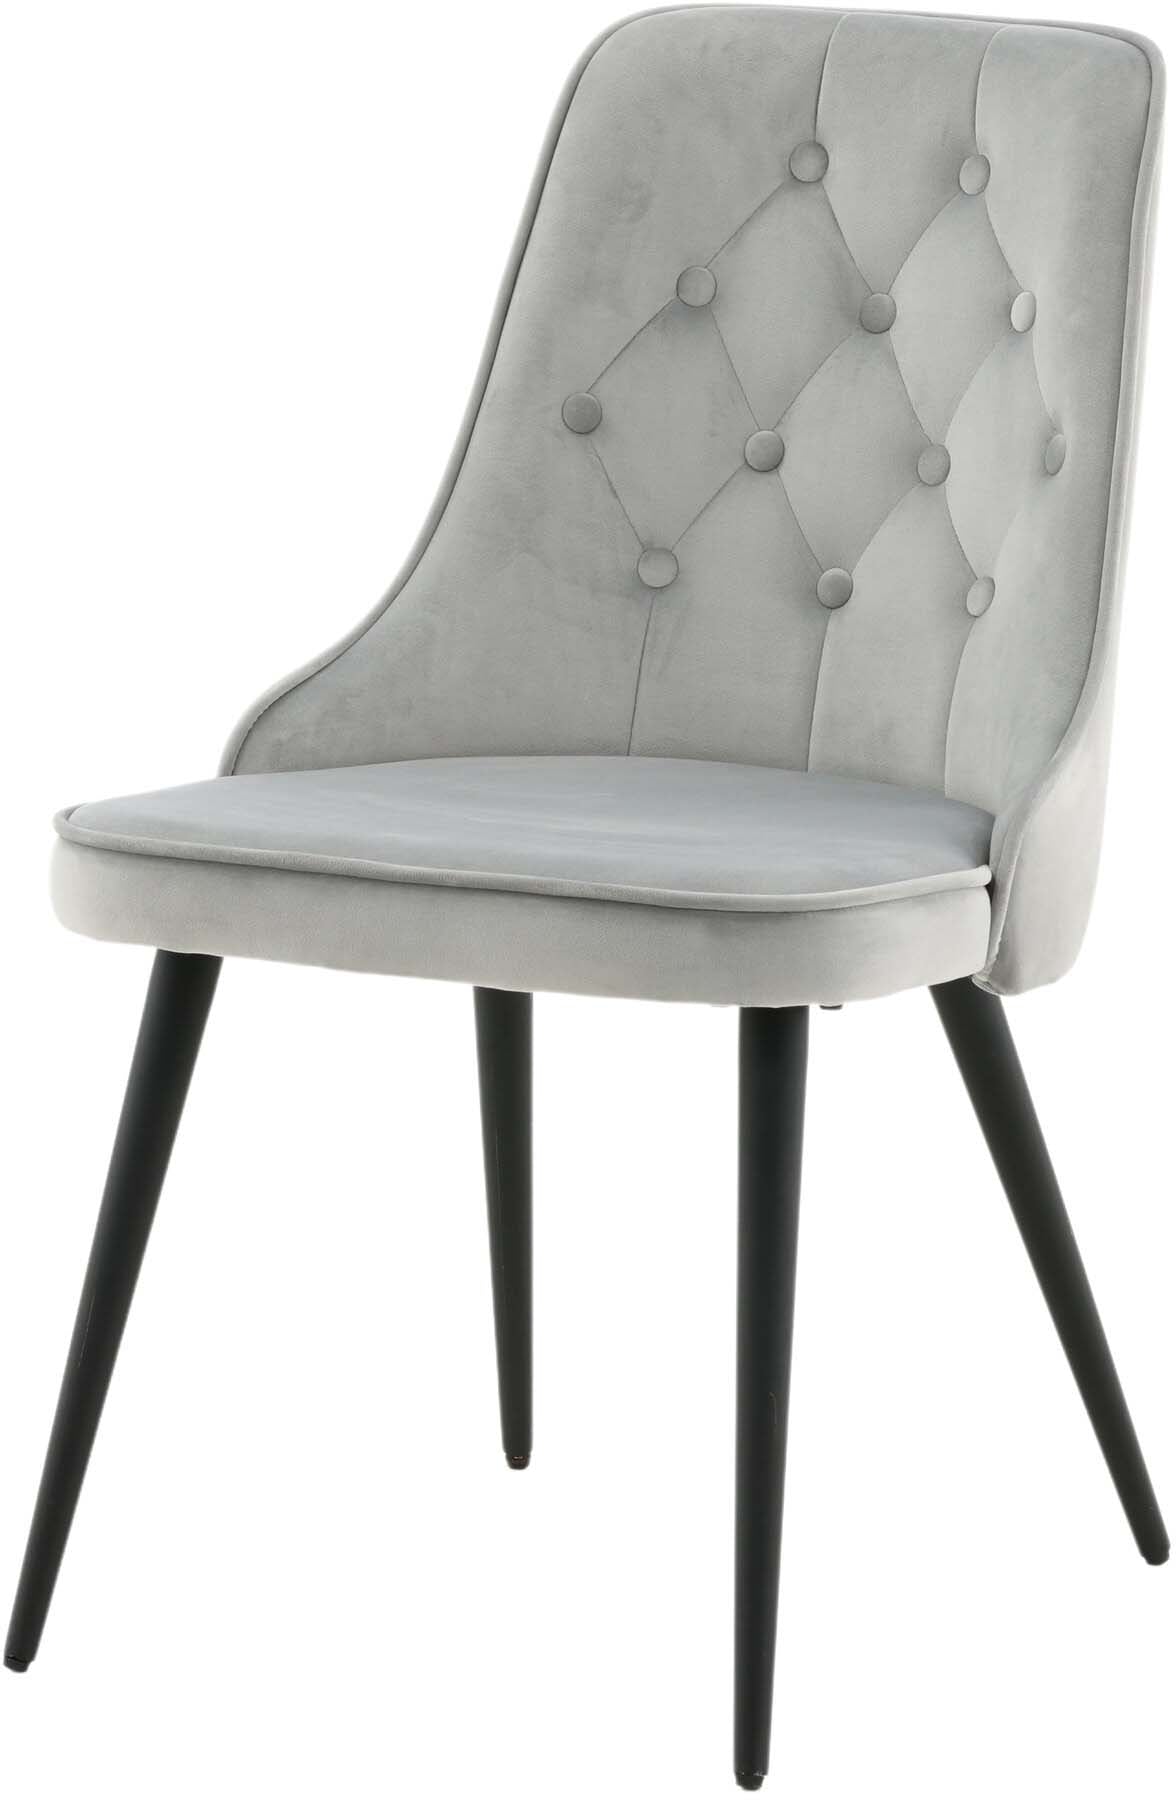 Velvet Deluxe Stuhl in Hellgrau / Schwarz präsentiert im Onlineshop von KAQTU Design AG. Stuhl ist von Venture Home